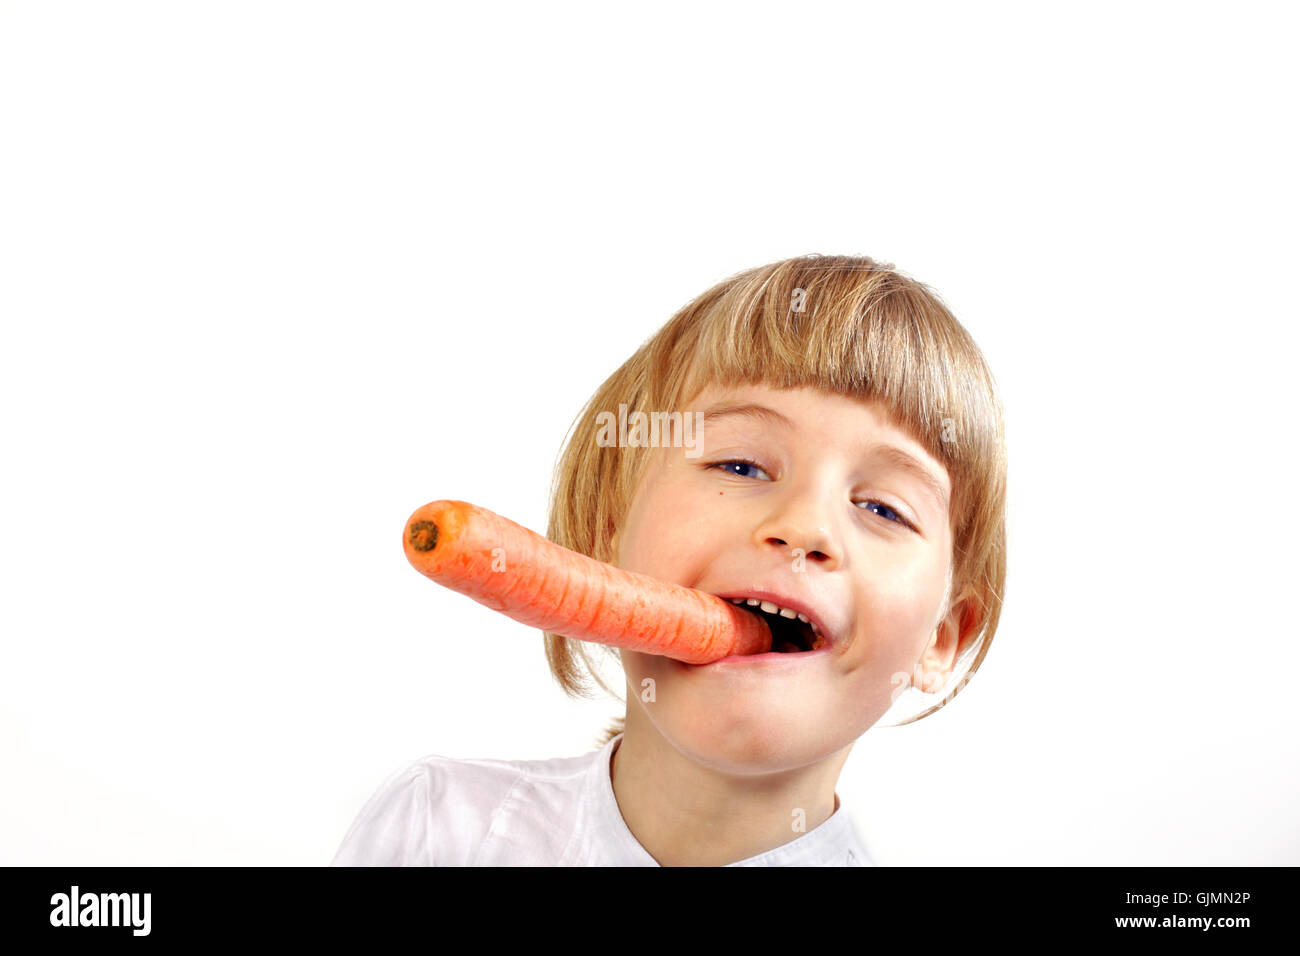 vegetable carrot girl Stock Photo